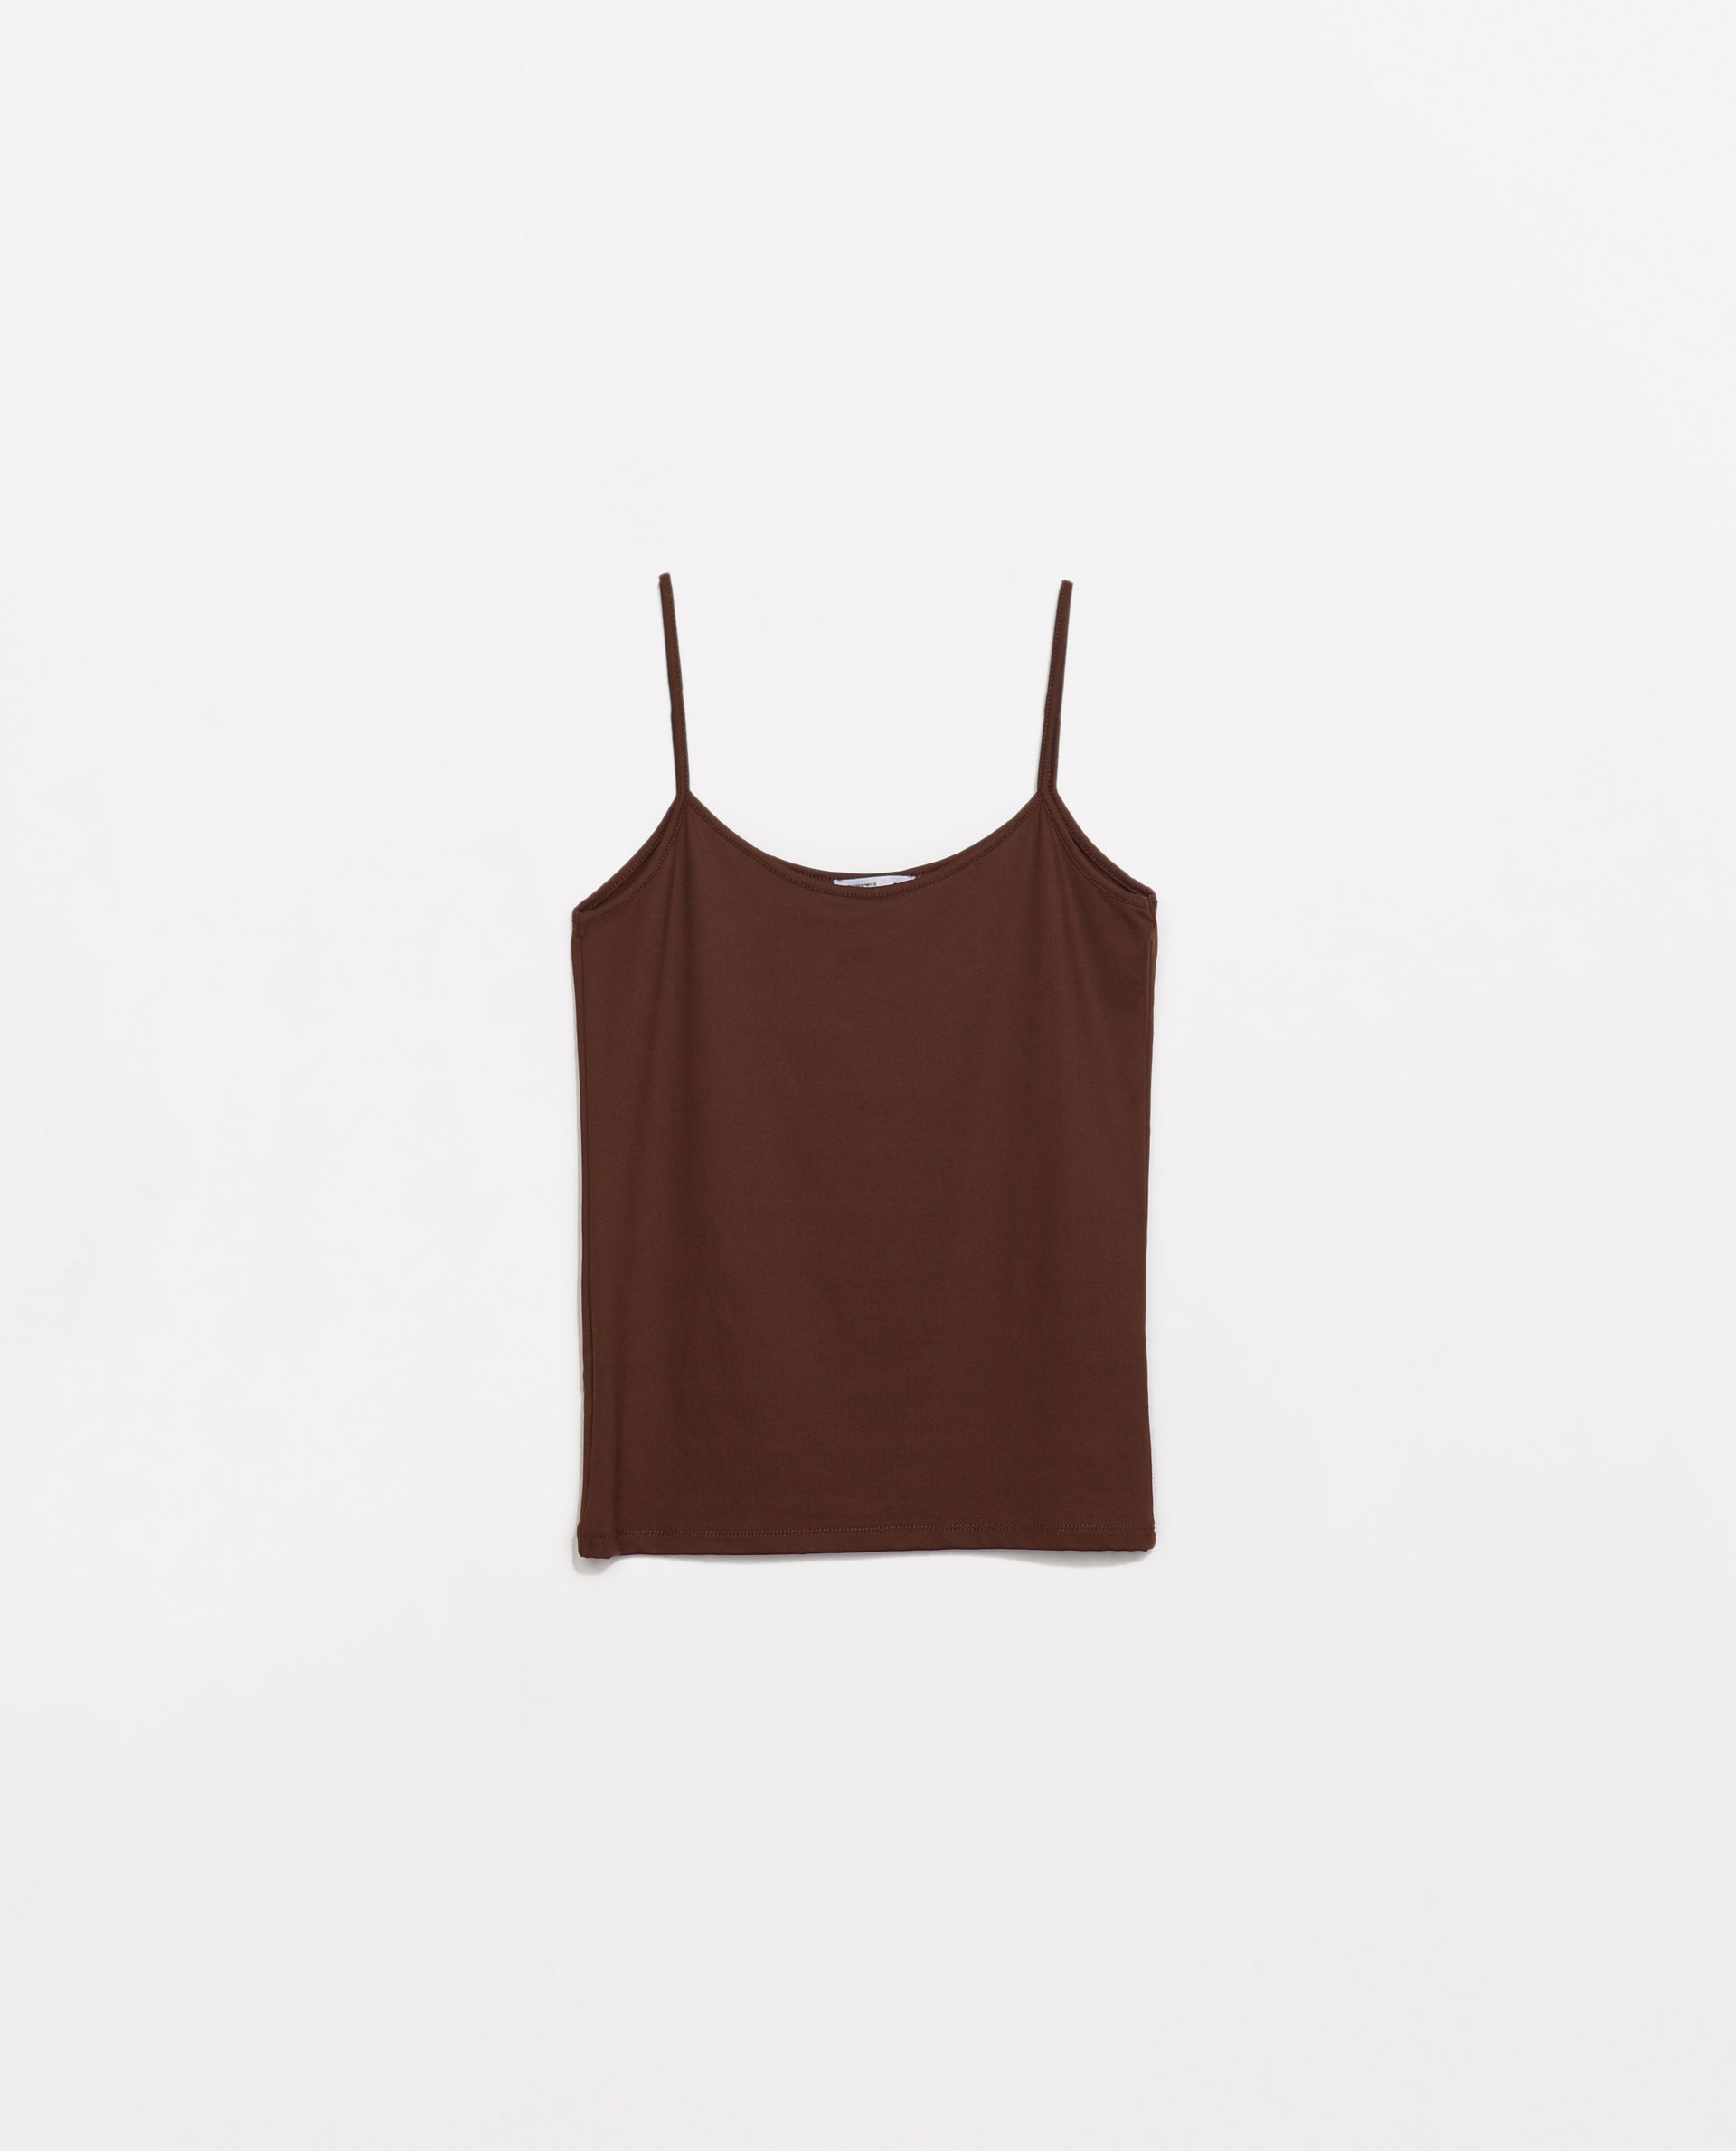 Zara Camisole Top in Brown (Dark brown) | Lyst